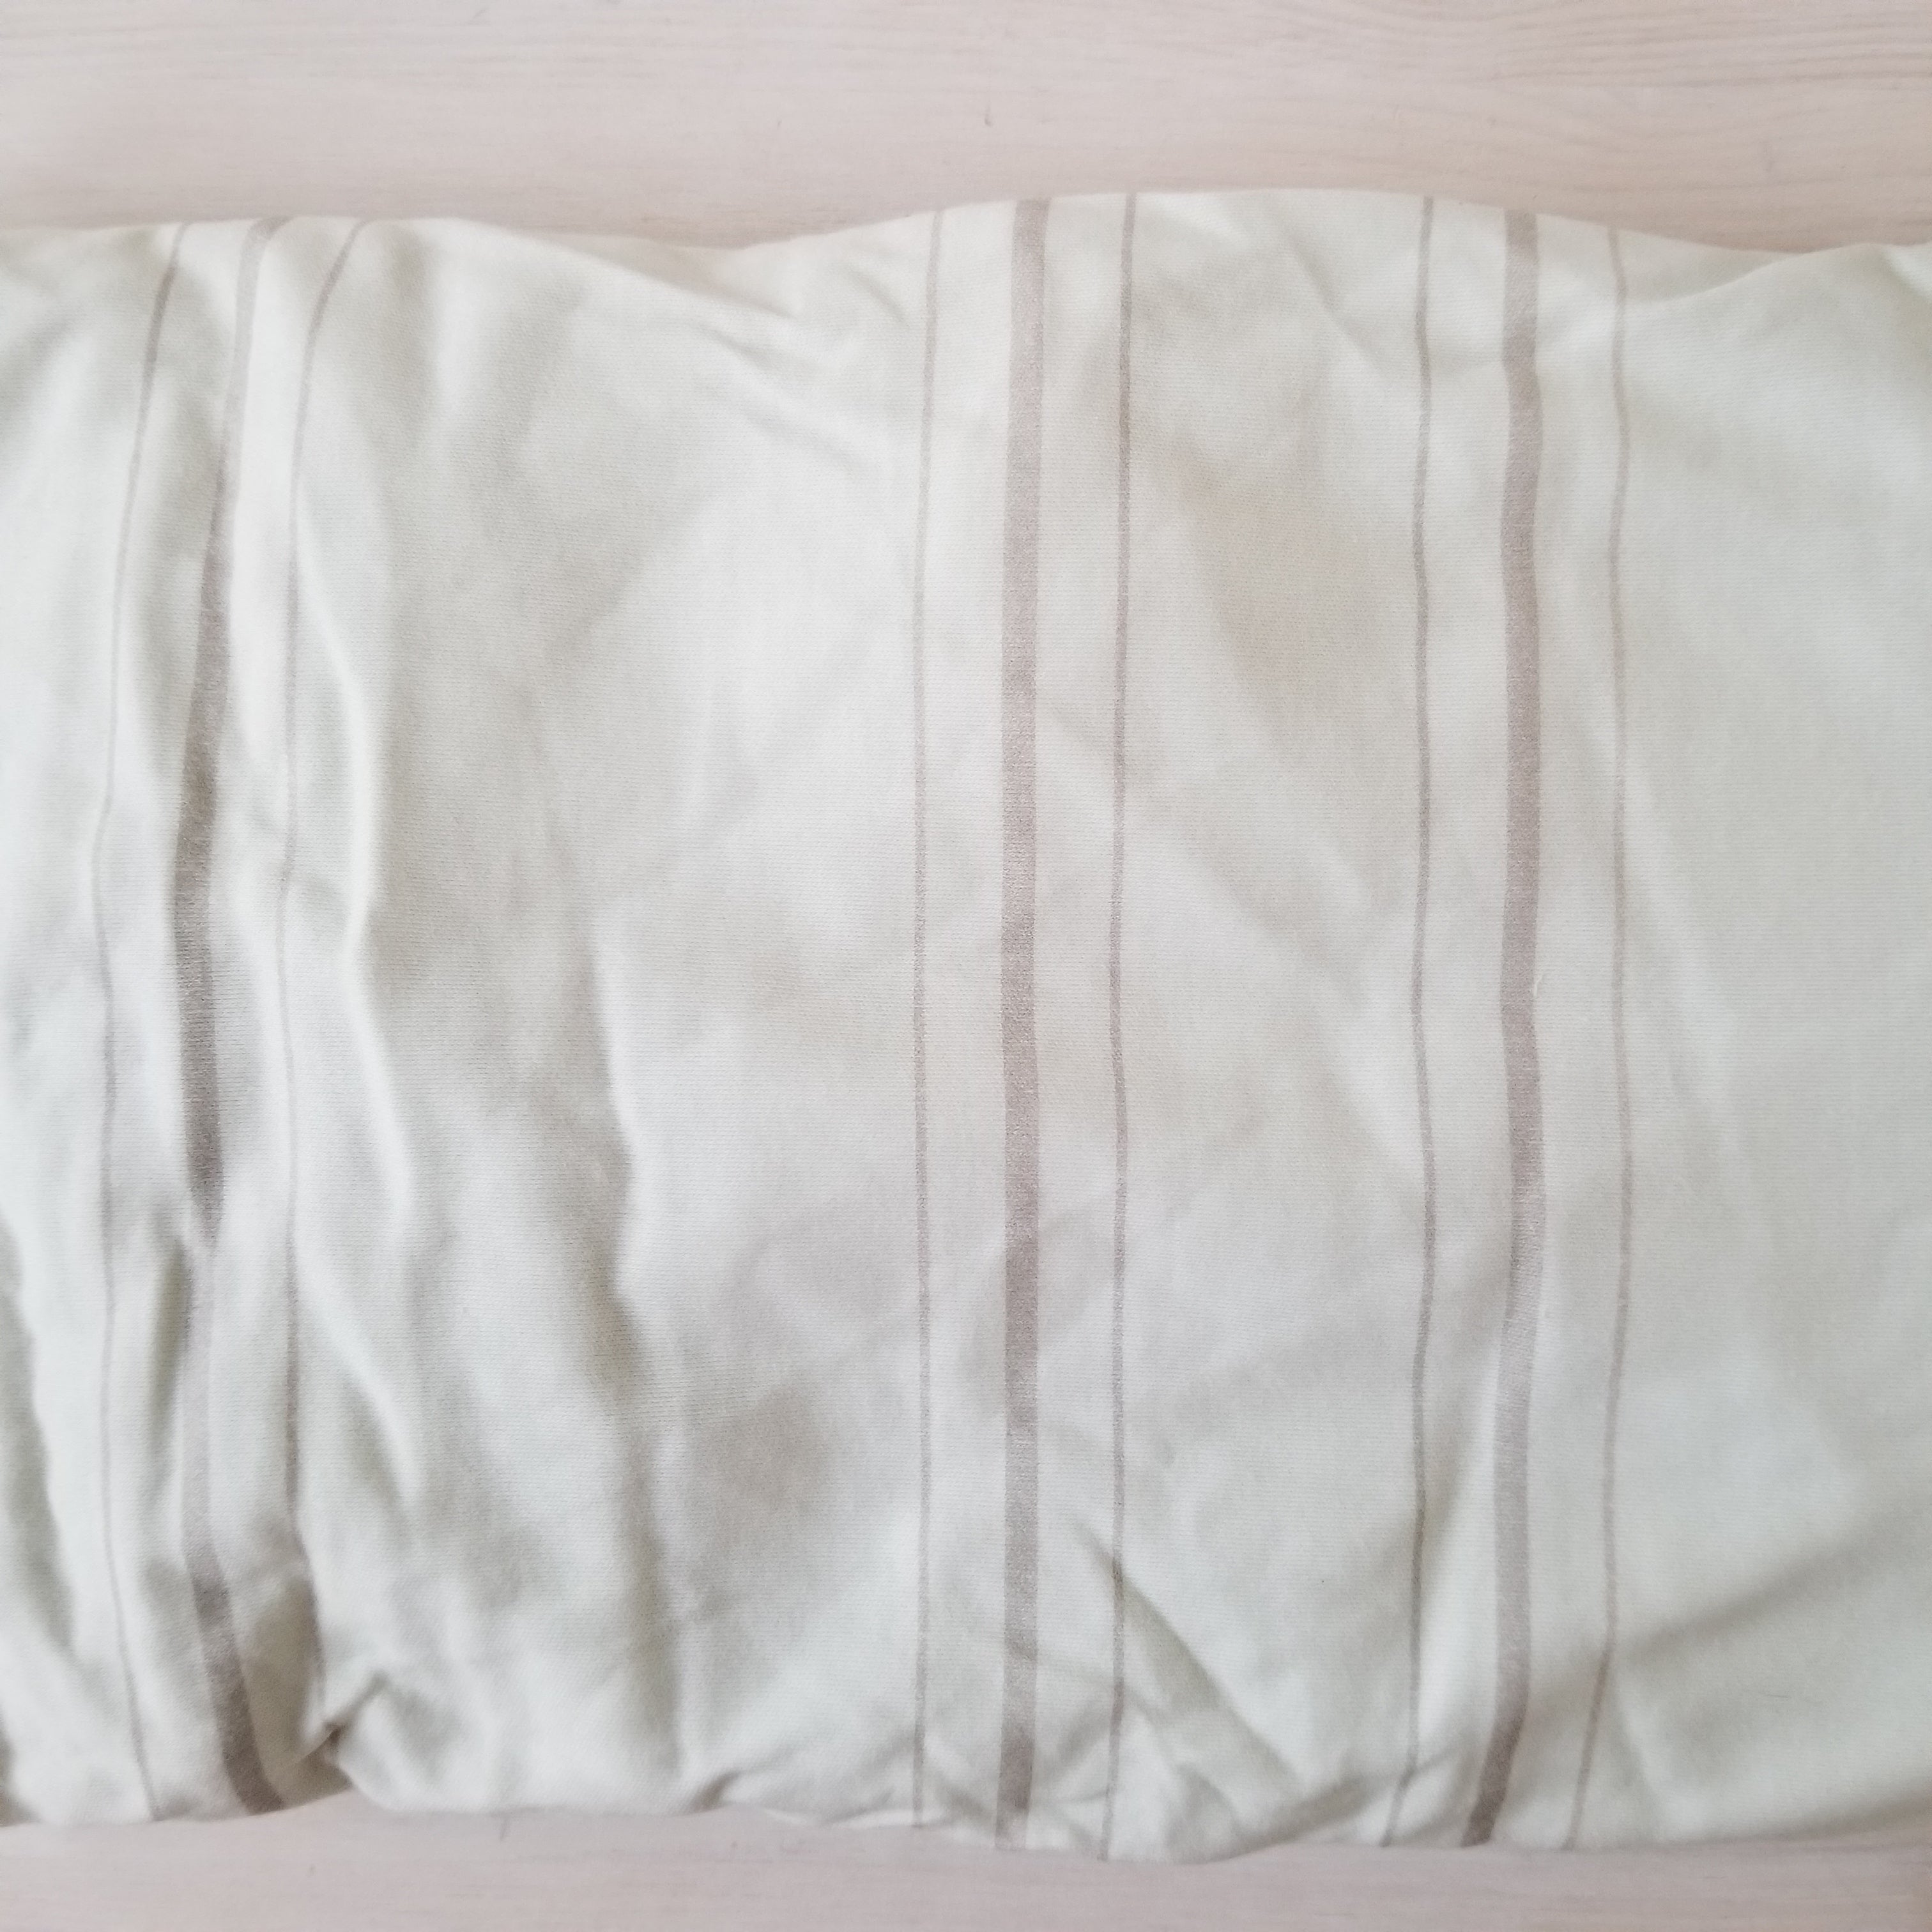 SOLDE 35$ - Drap contour bassinette ultra doux  - 100% coton - Murmure - Ligné blanc mentholé et gris